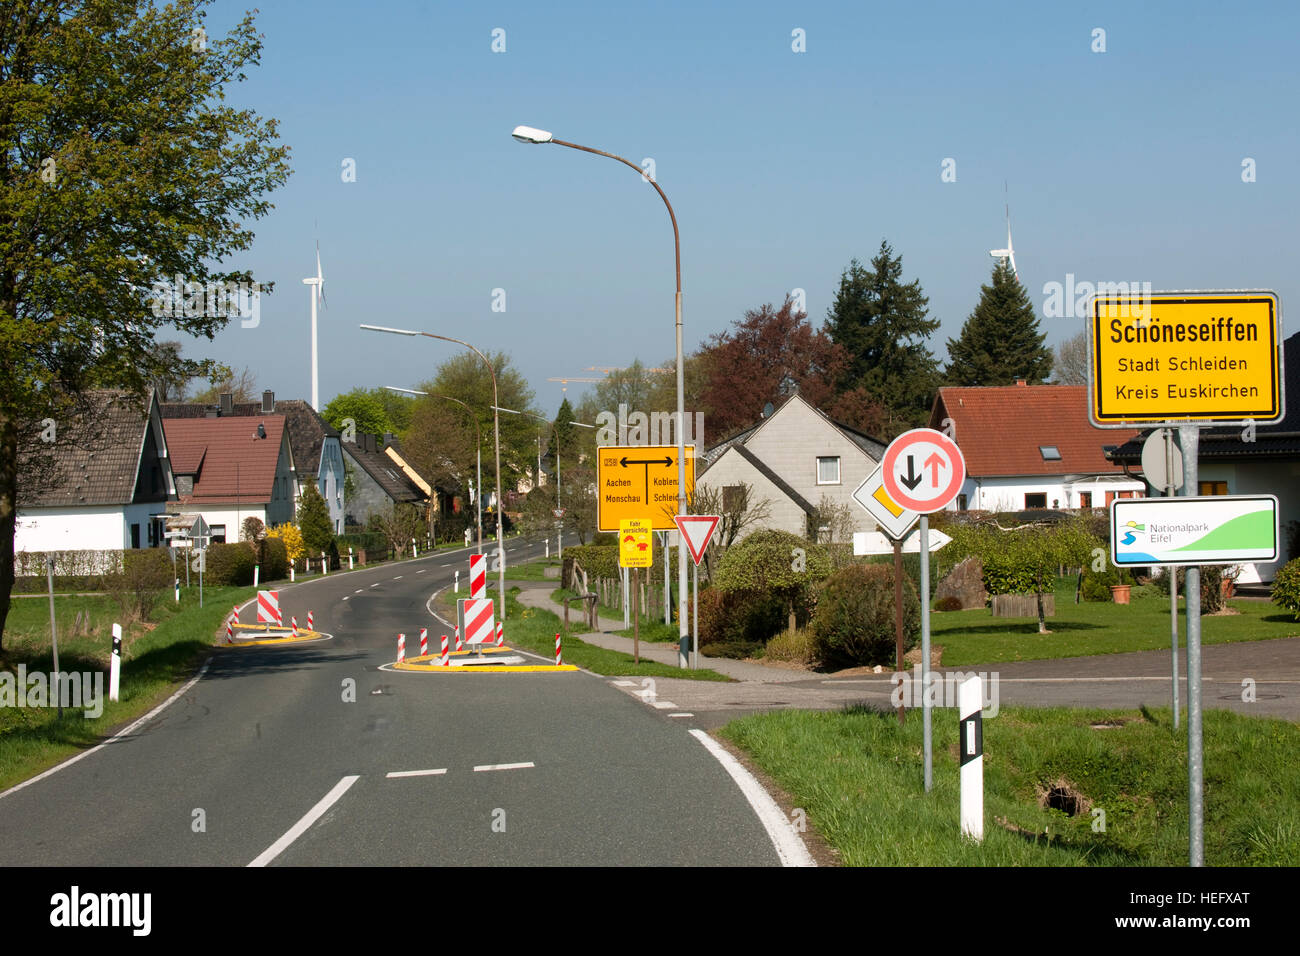 Deutschland, Nordrhein-Westfalen, Kreis Euskirchen, Stadt Schleiden, Schöneseiffen, Ortseinfahrt Stock Photo